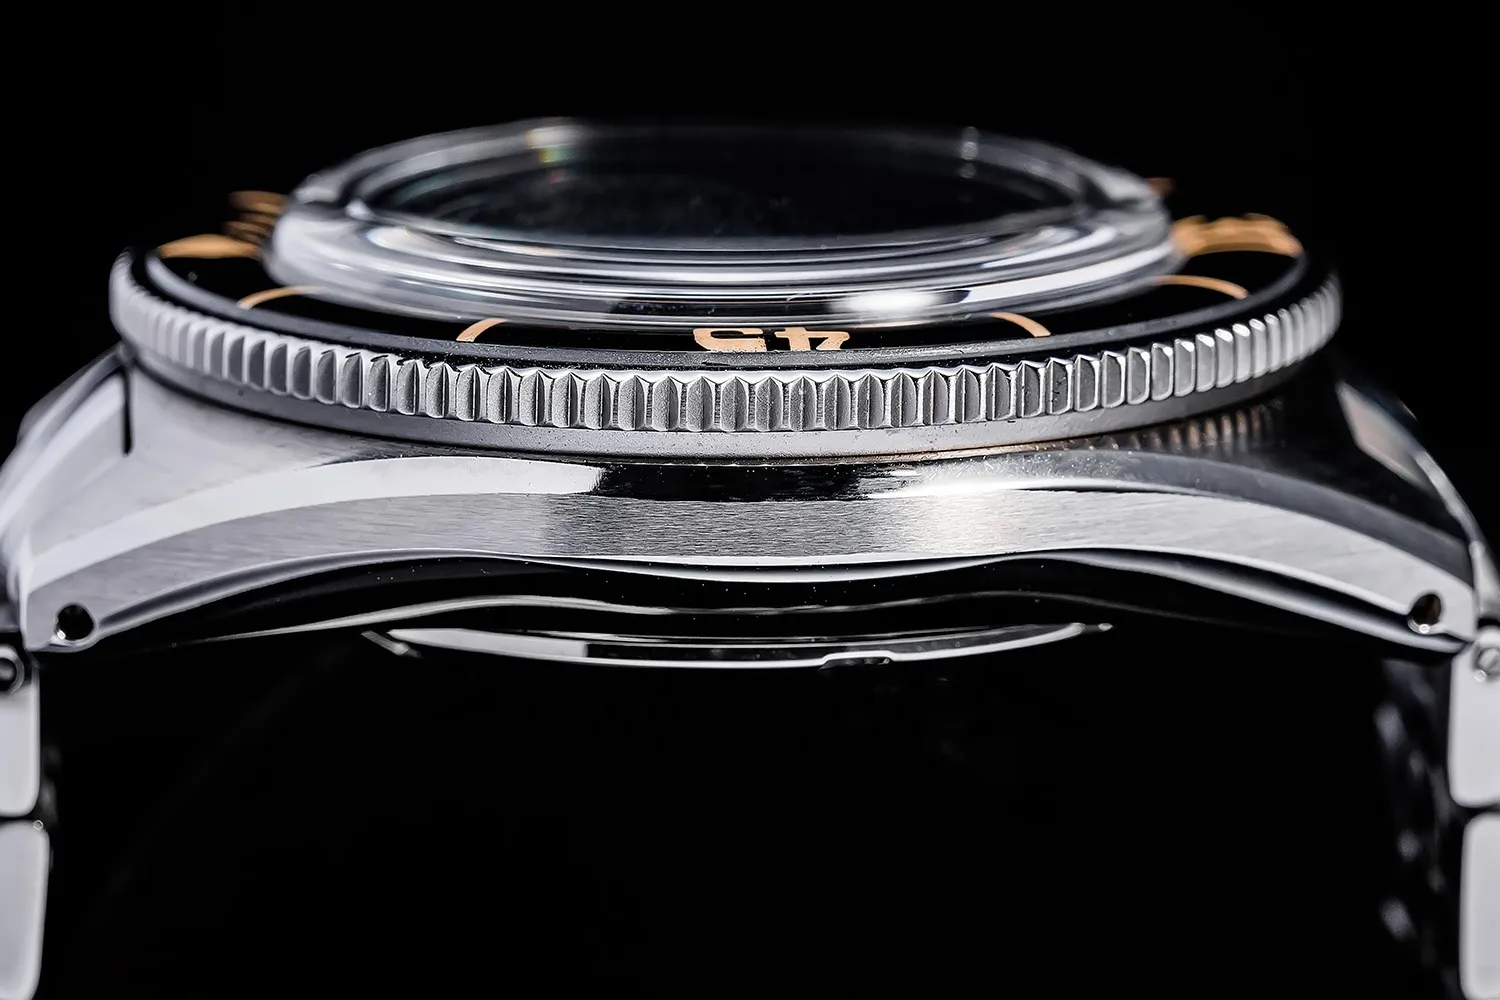 Reloj automático para buzos estilo Fifty Fathoms de alta calidad con bisel luminoso de zafiro 20ATM reloj de pulsera marino 258K